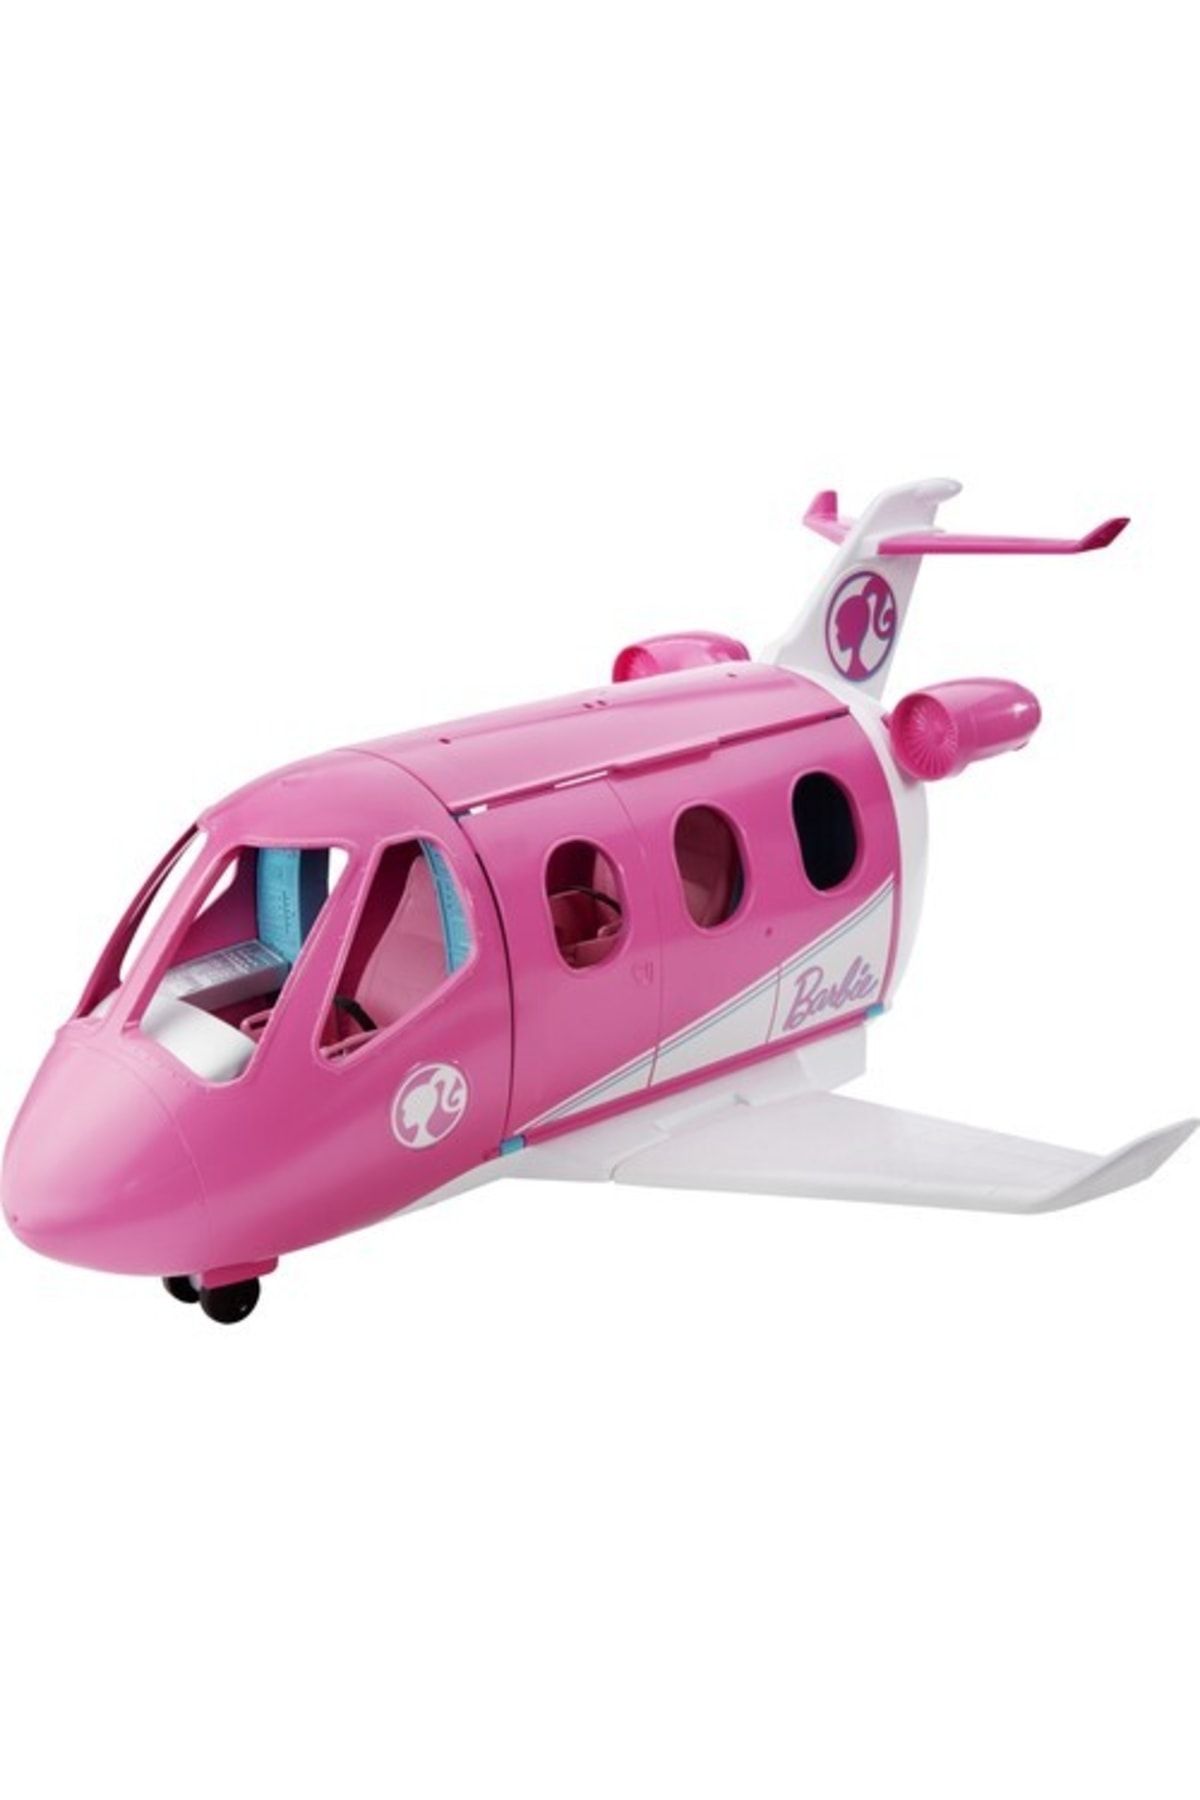 Barbie Nin Pembe Uçağı, 3 Yaş Ve Üzeri, Gdg76